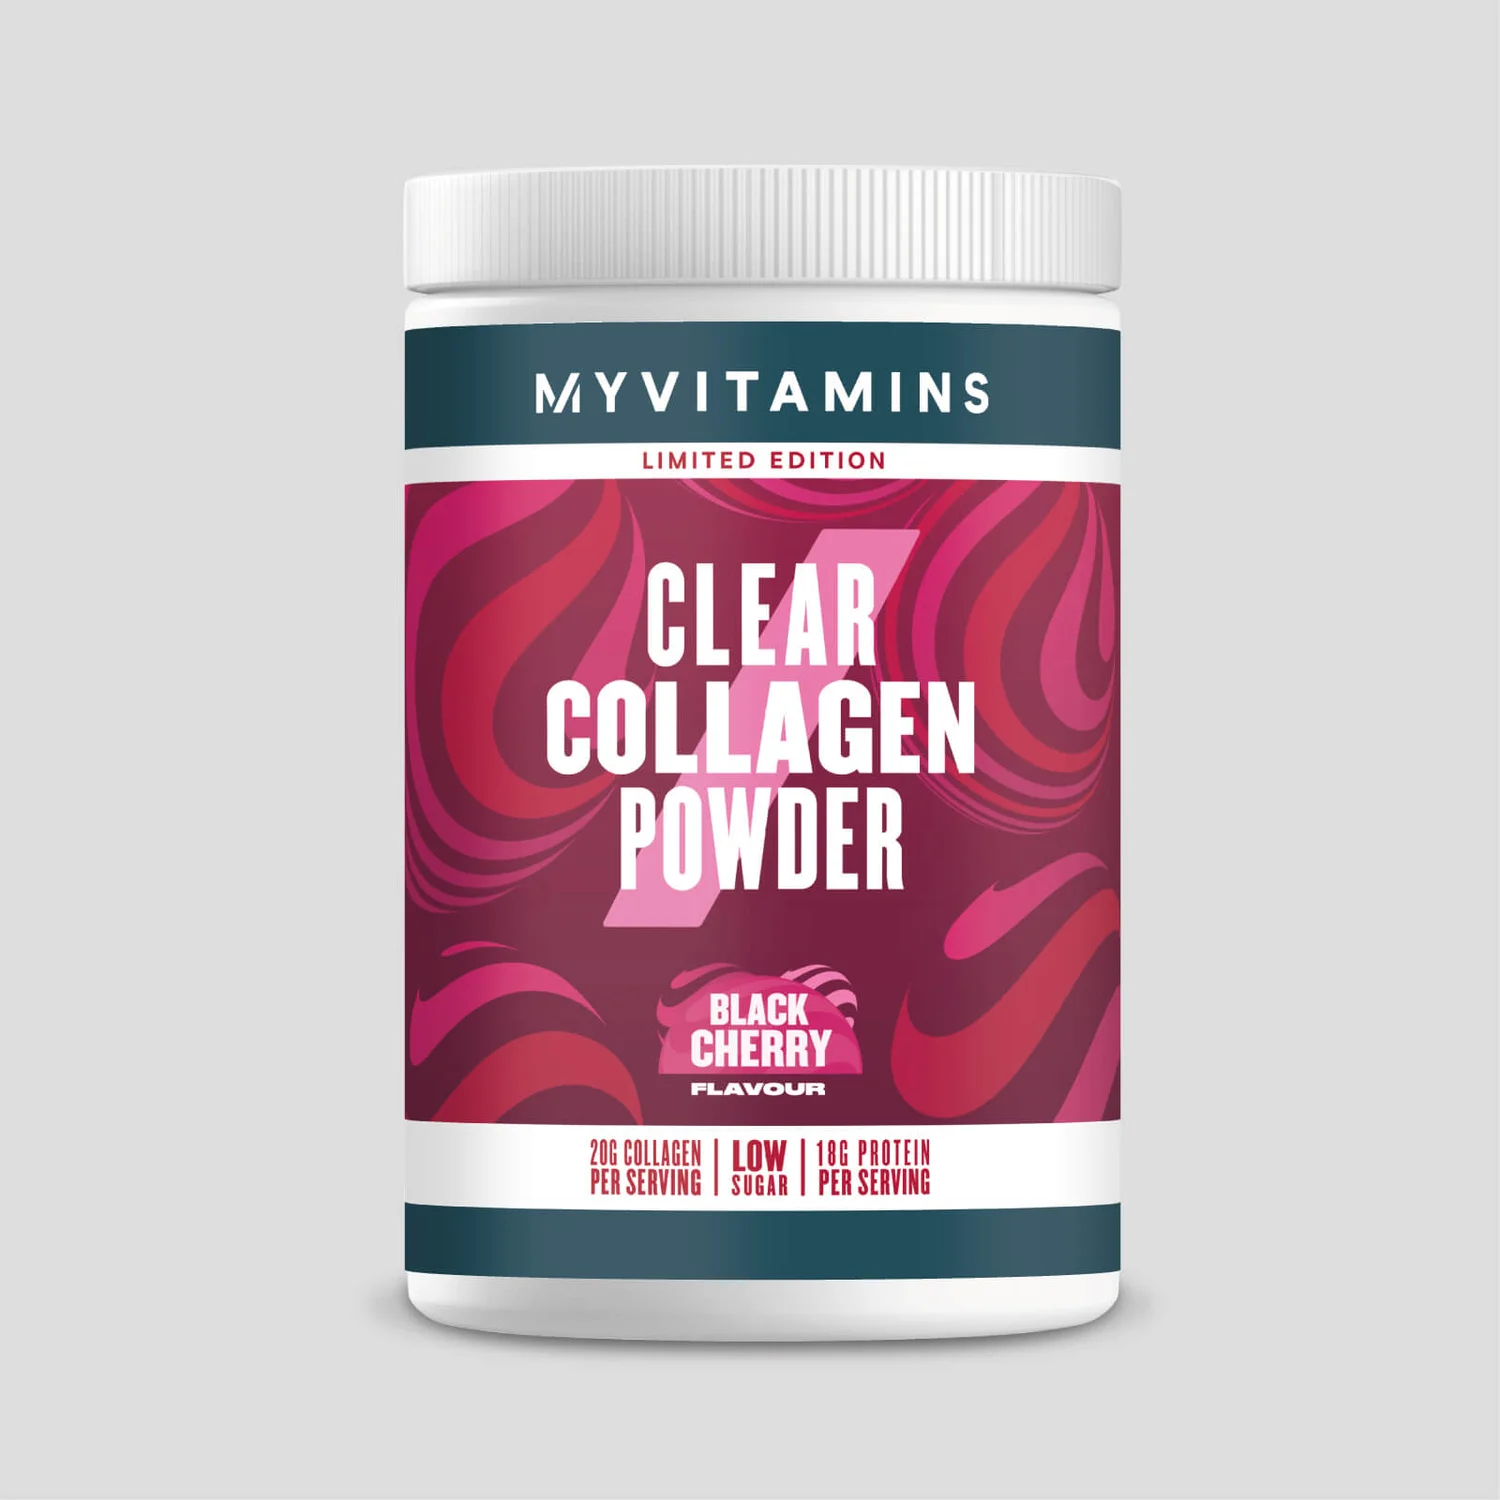 Clear Collagen Powder